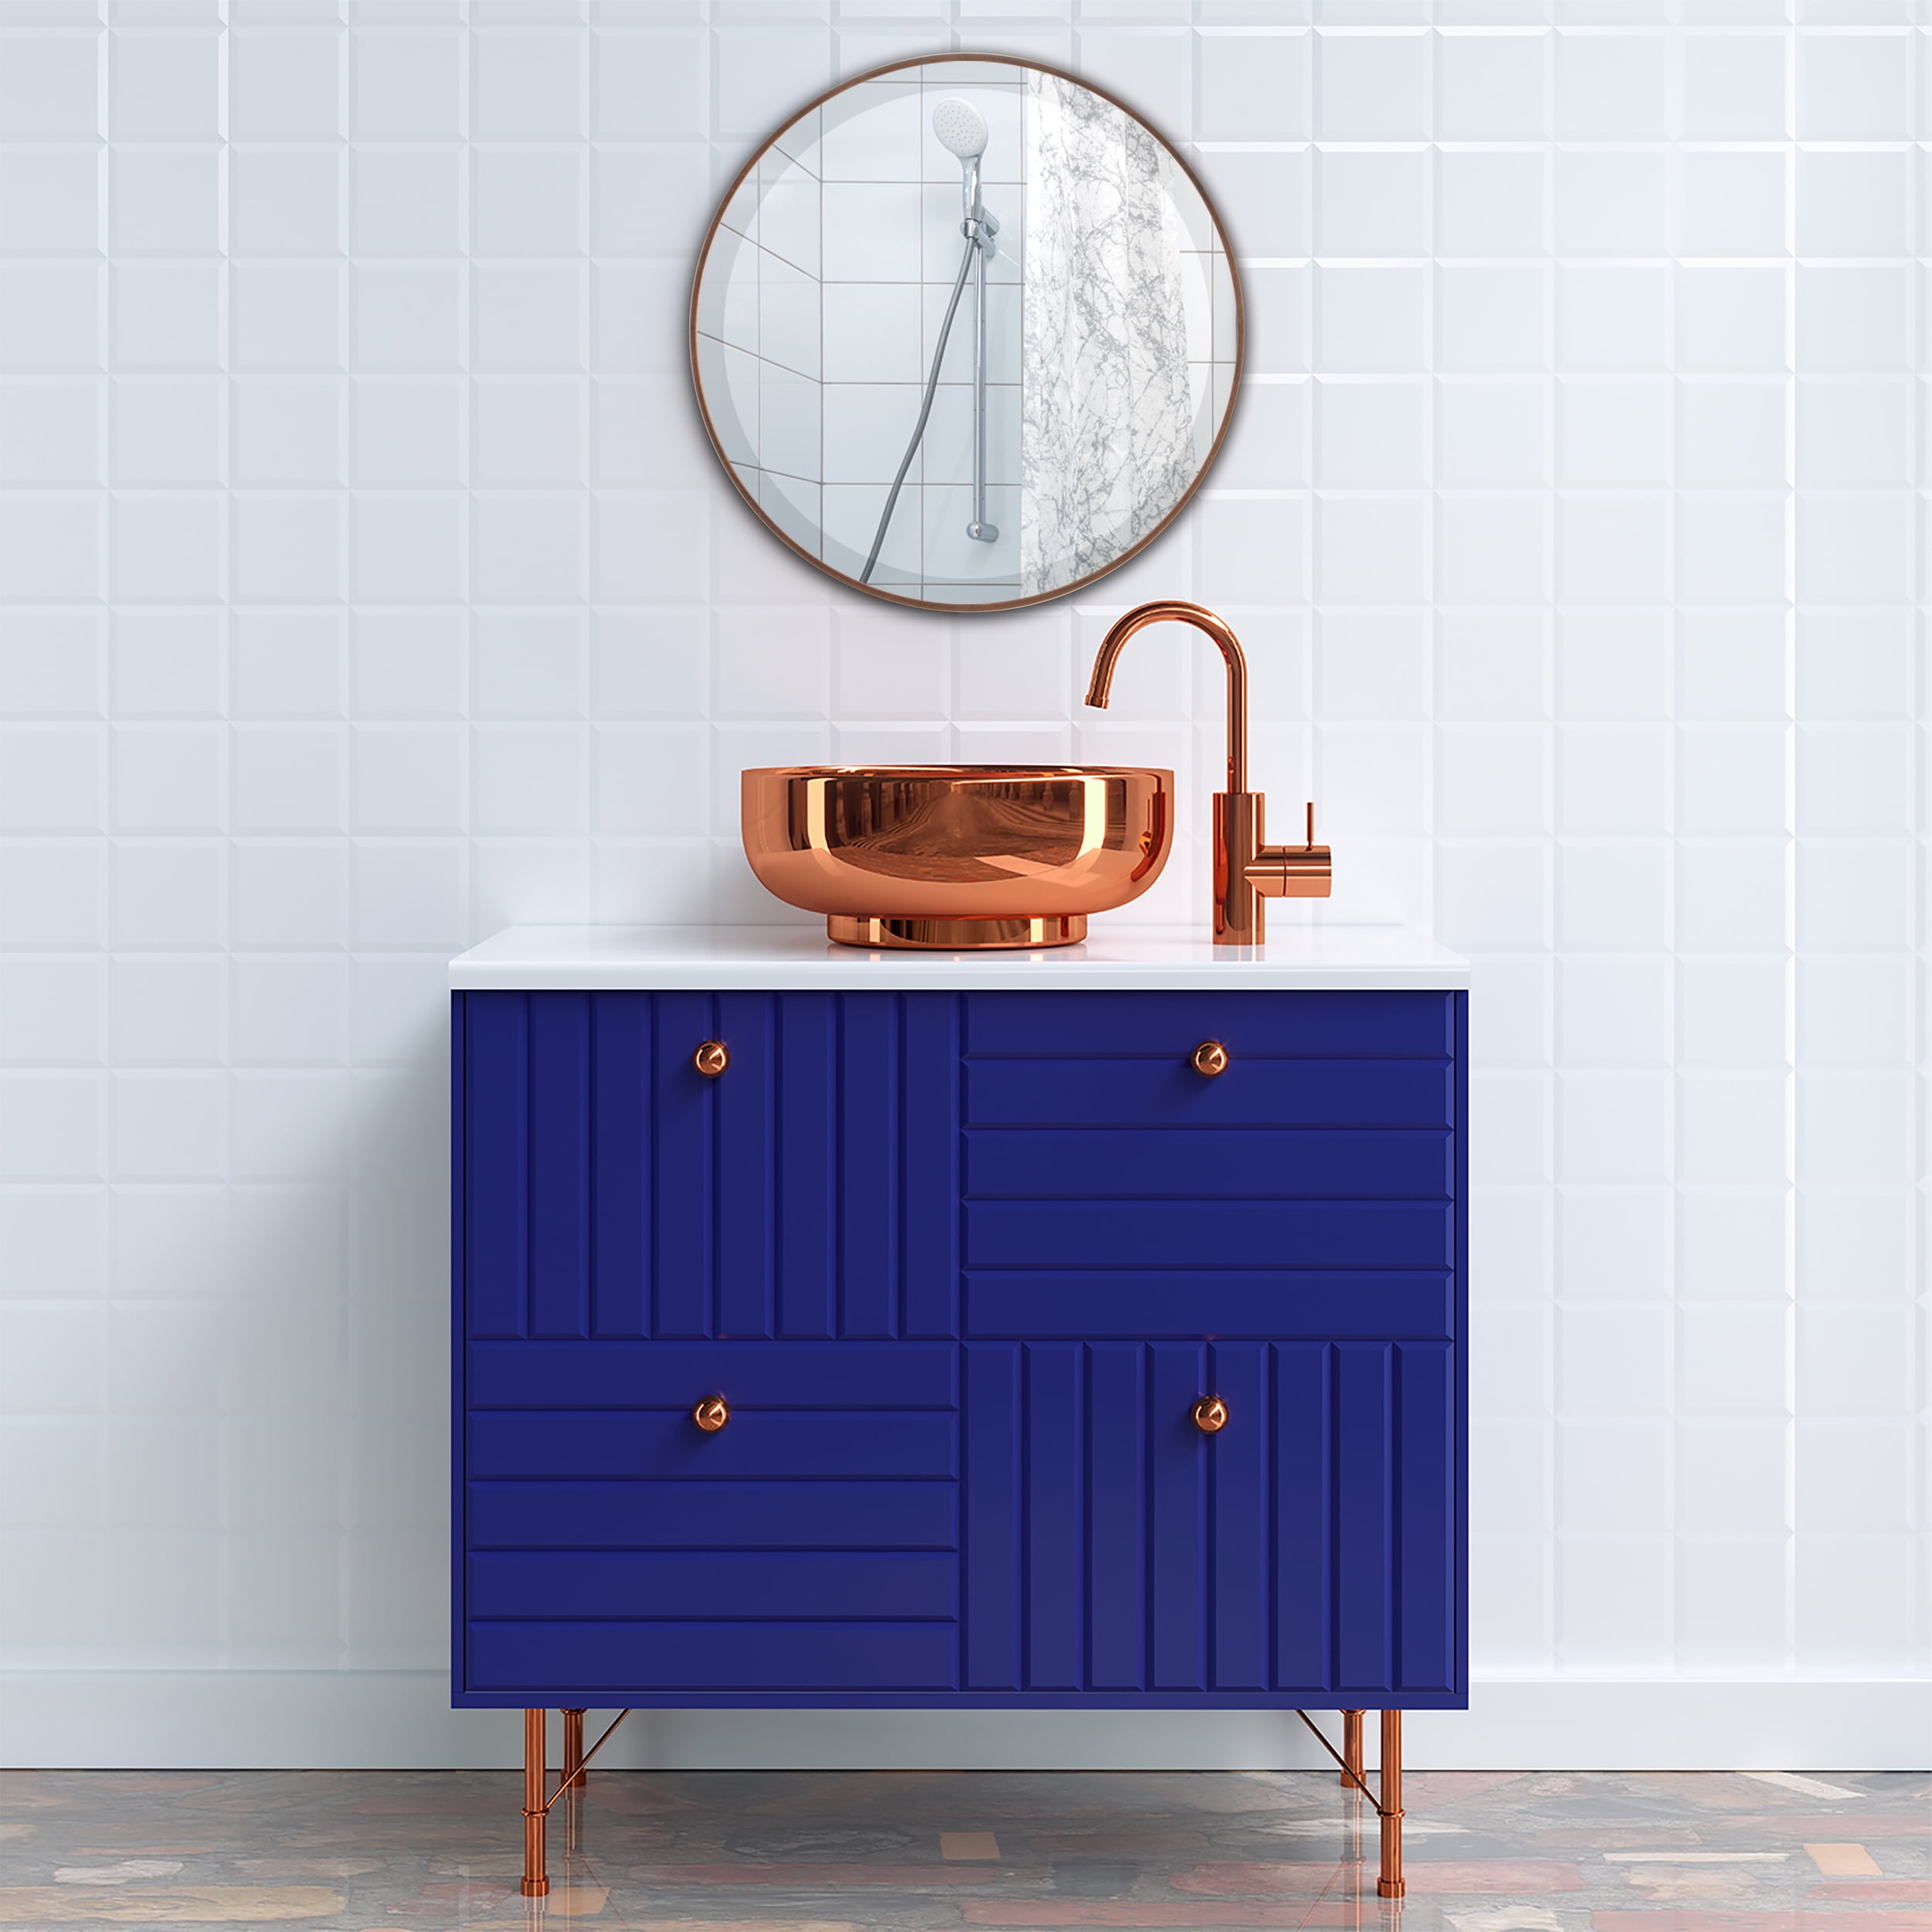 売れ筋ランキングも OVALCREST Oval Wooden Beveled Wall Mirror for Home Decor,  Bathroom, Vanit